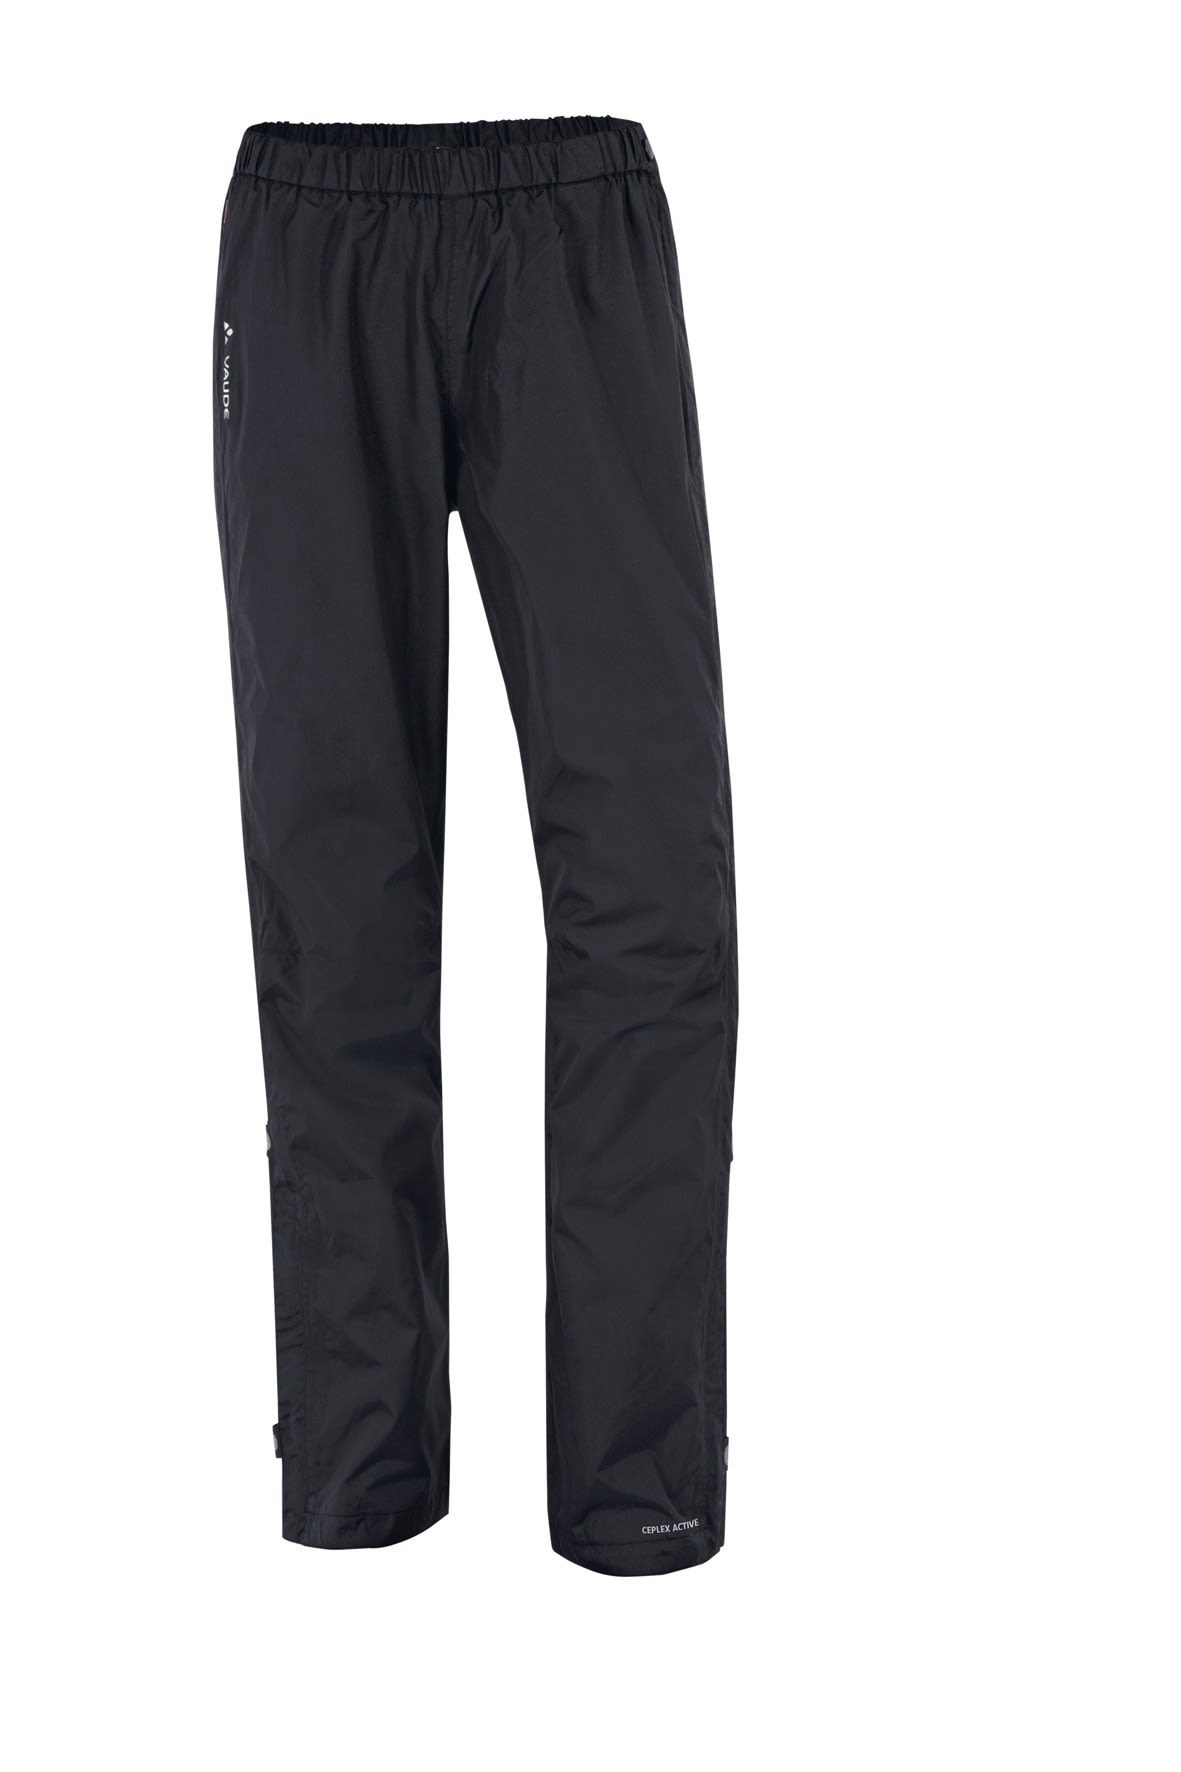 Vaude Fluid Full-Zip Pants Schwarz- Female Hosen- Grsse 44 - Farbe Black unter Vaude